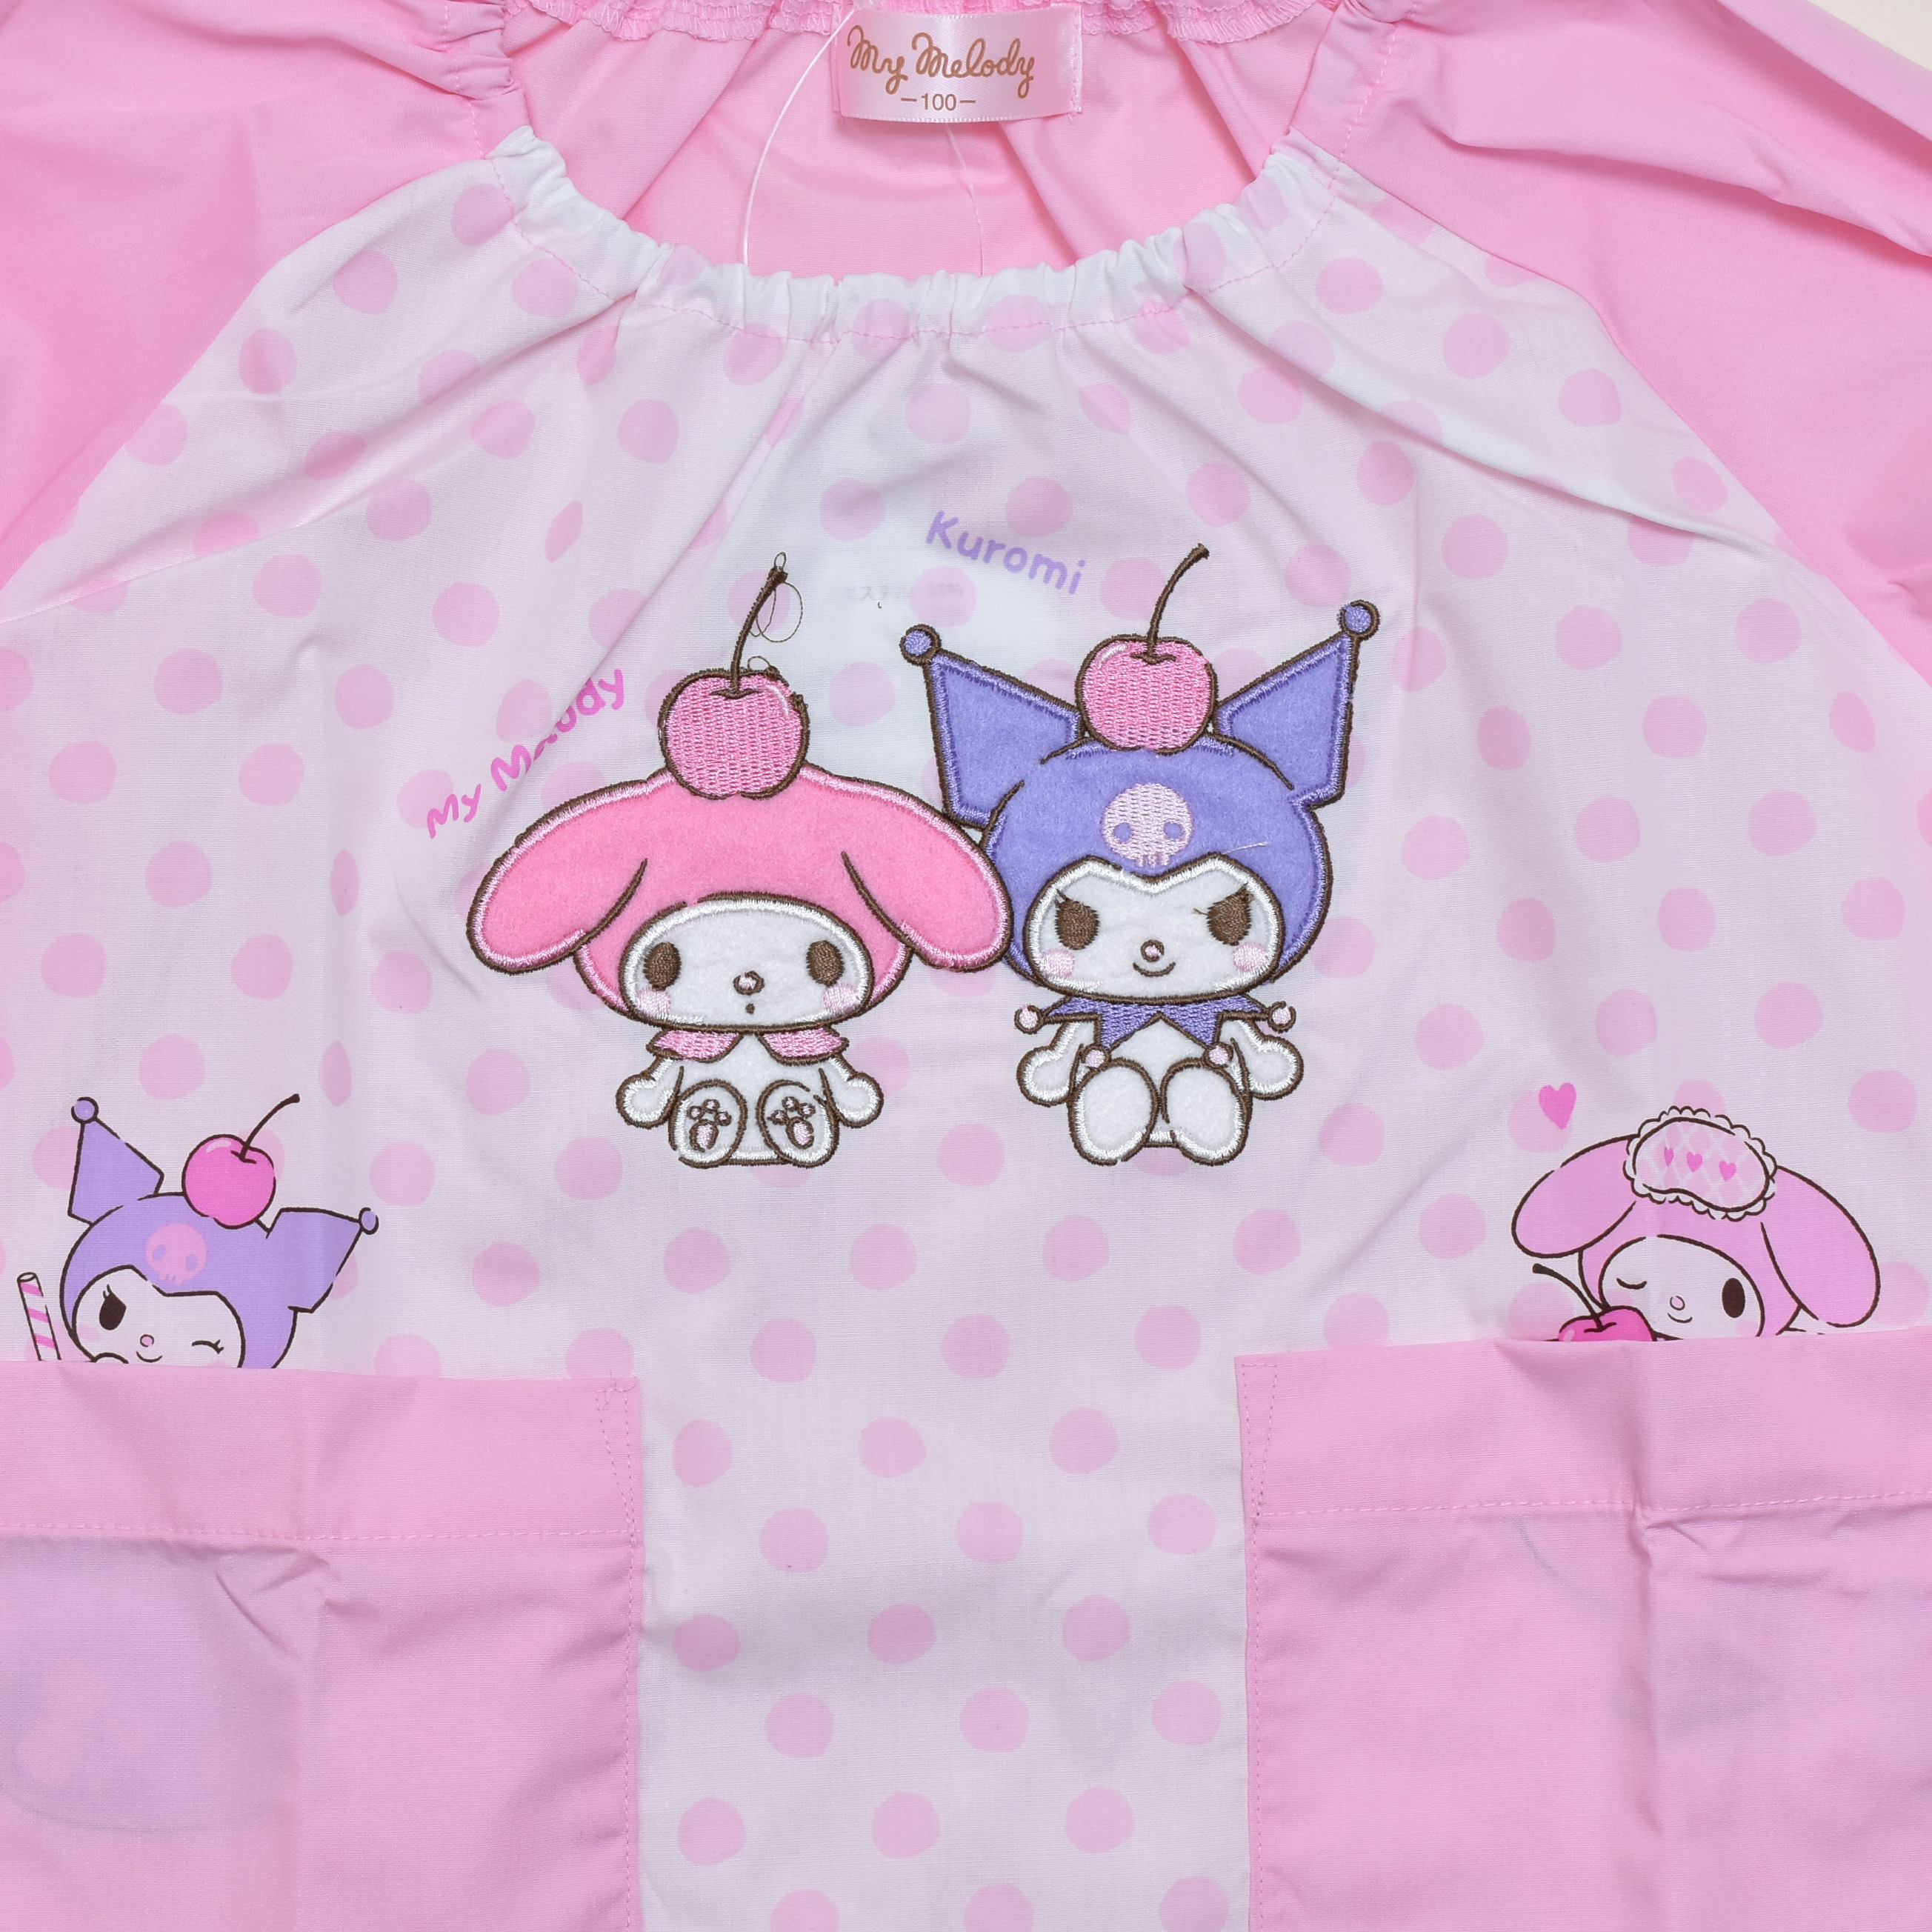  бесплатная доставка! Sanrio My Melody рубашка Kids длинный рукав розовый (431MM6031)